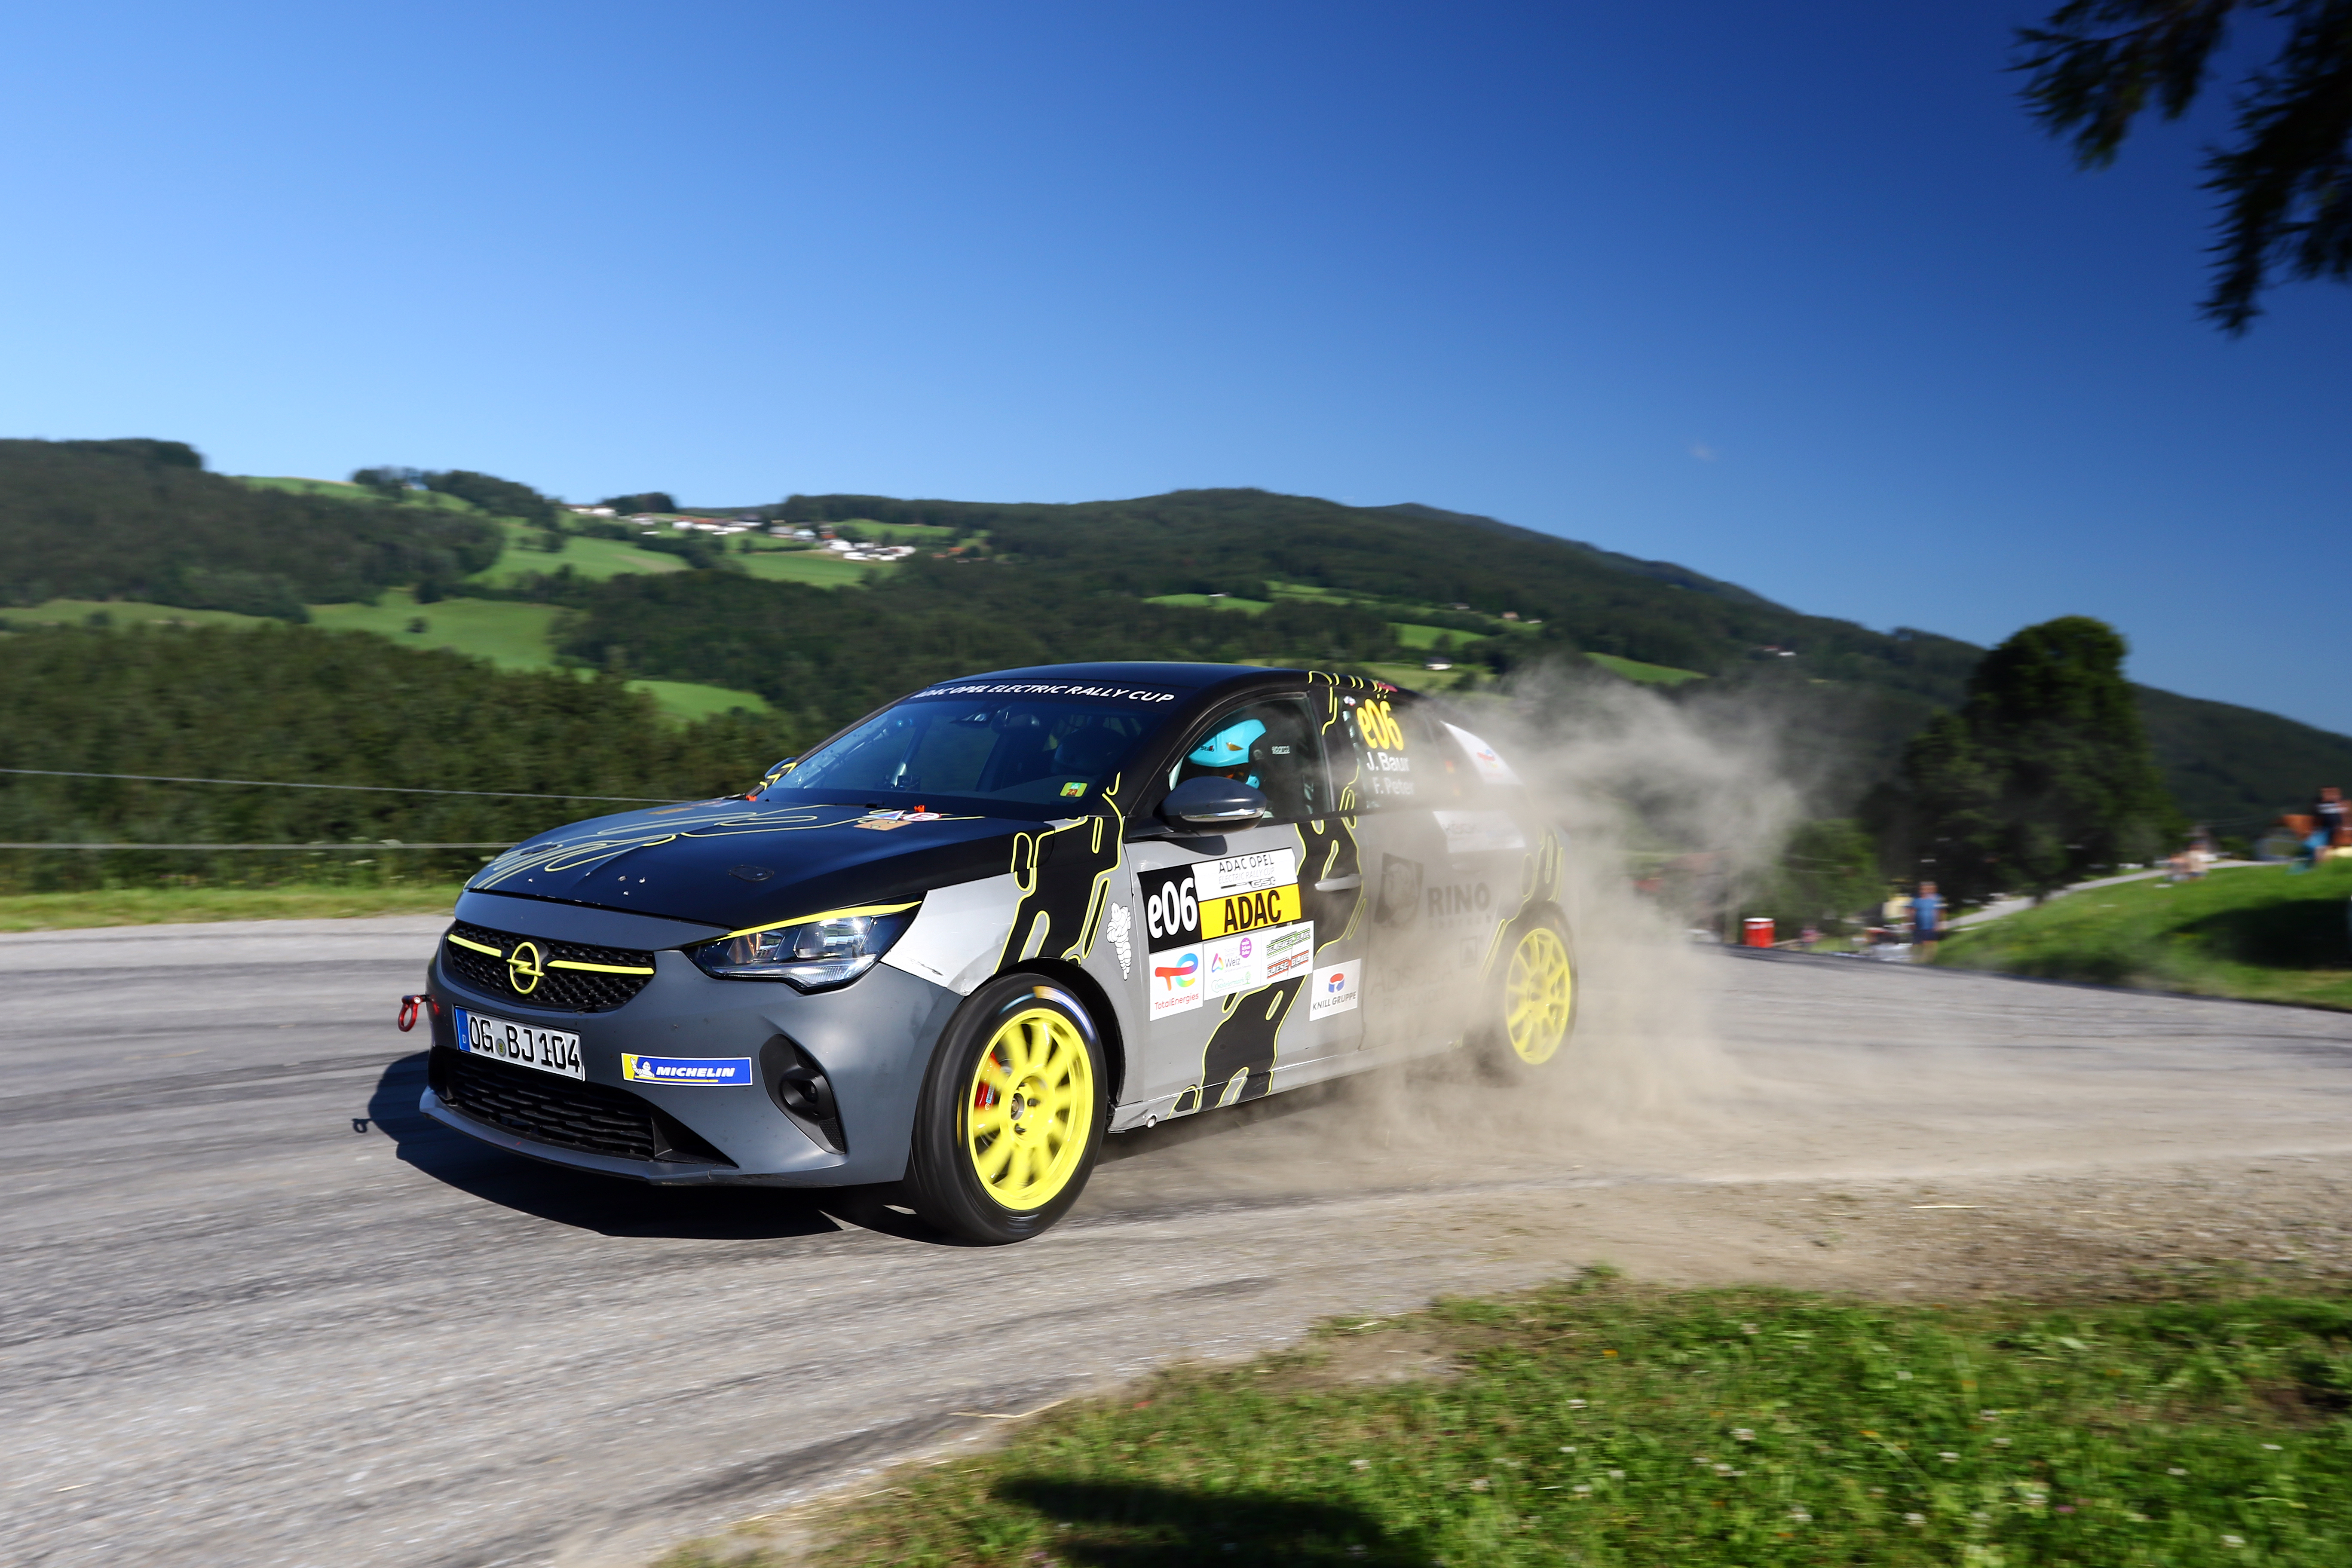 Lire la suite à propos de l’article Opel Corsa Rally Electric Driver, Reiter remporte la victoire dans la chaleur styrienne